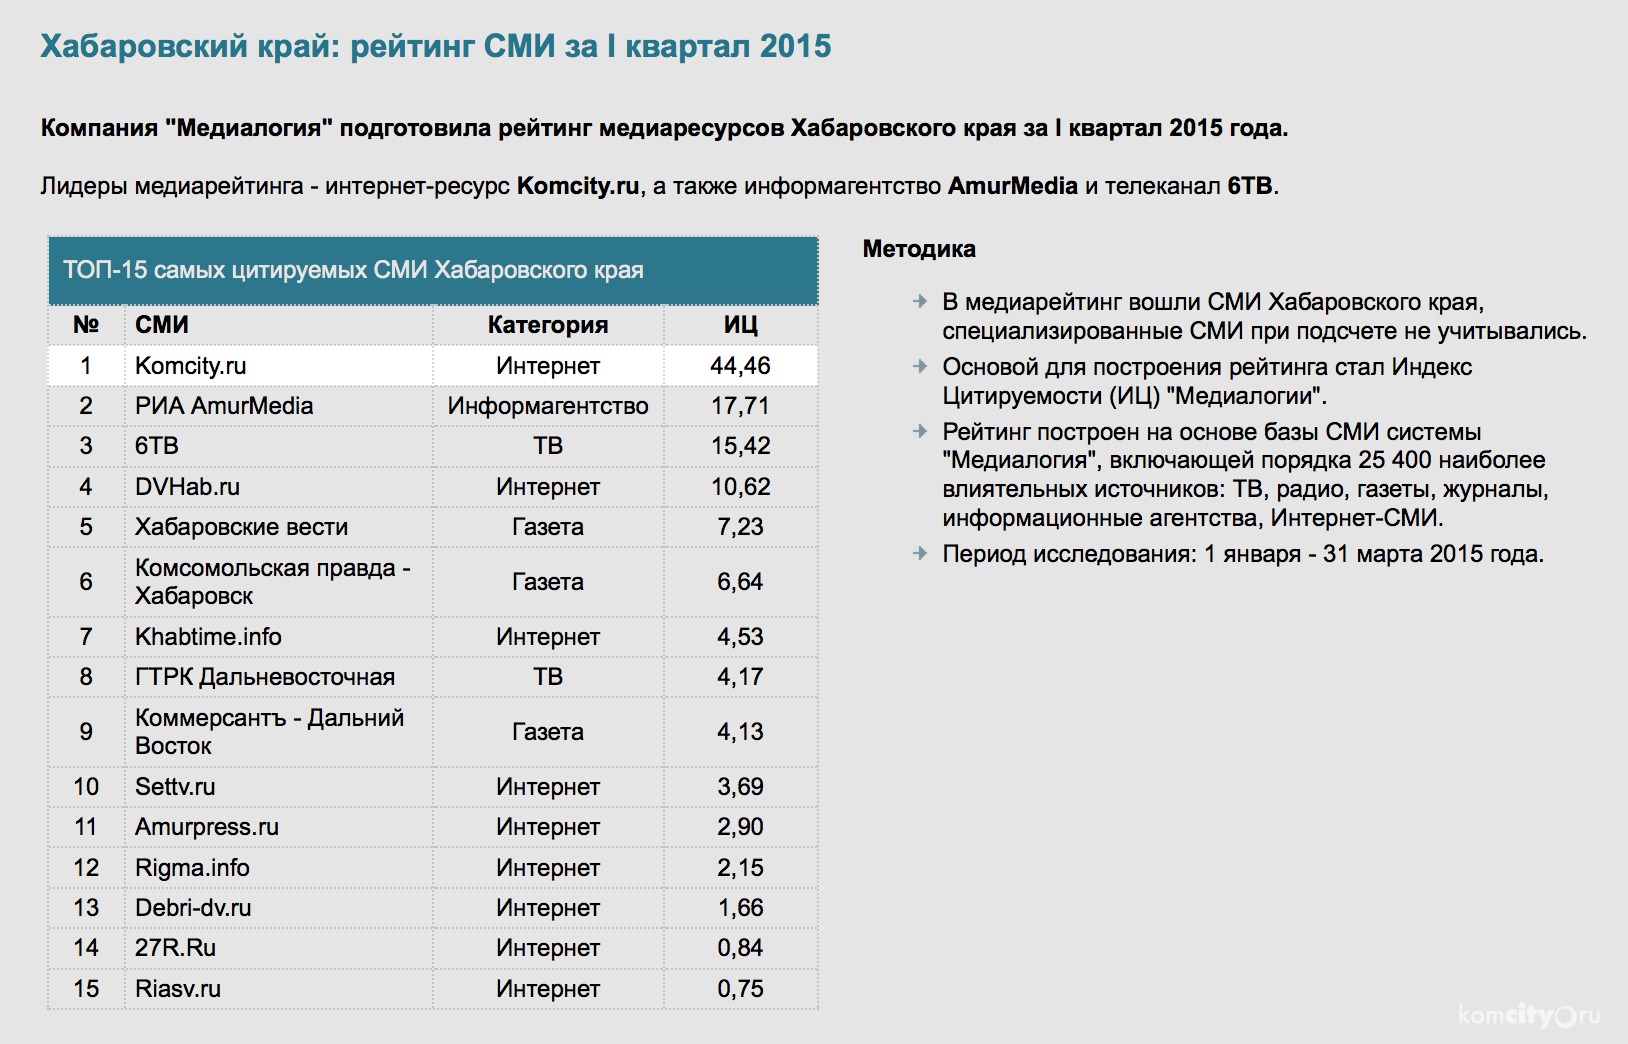 Сайт komcity.ru признан самым цитируемым интернет-СМИ Хабаровского края по итогам первого квартала 2015-го года